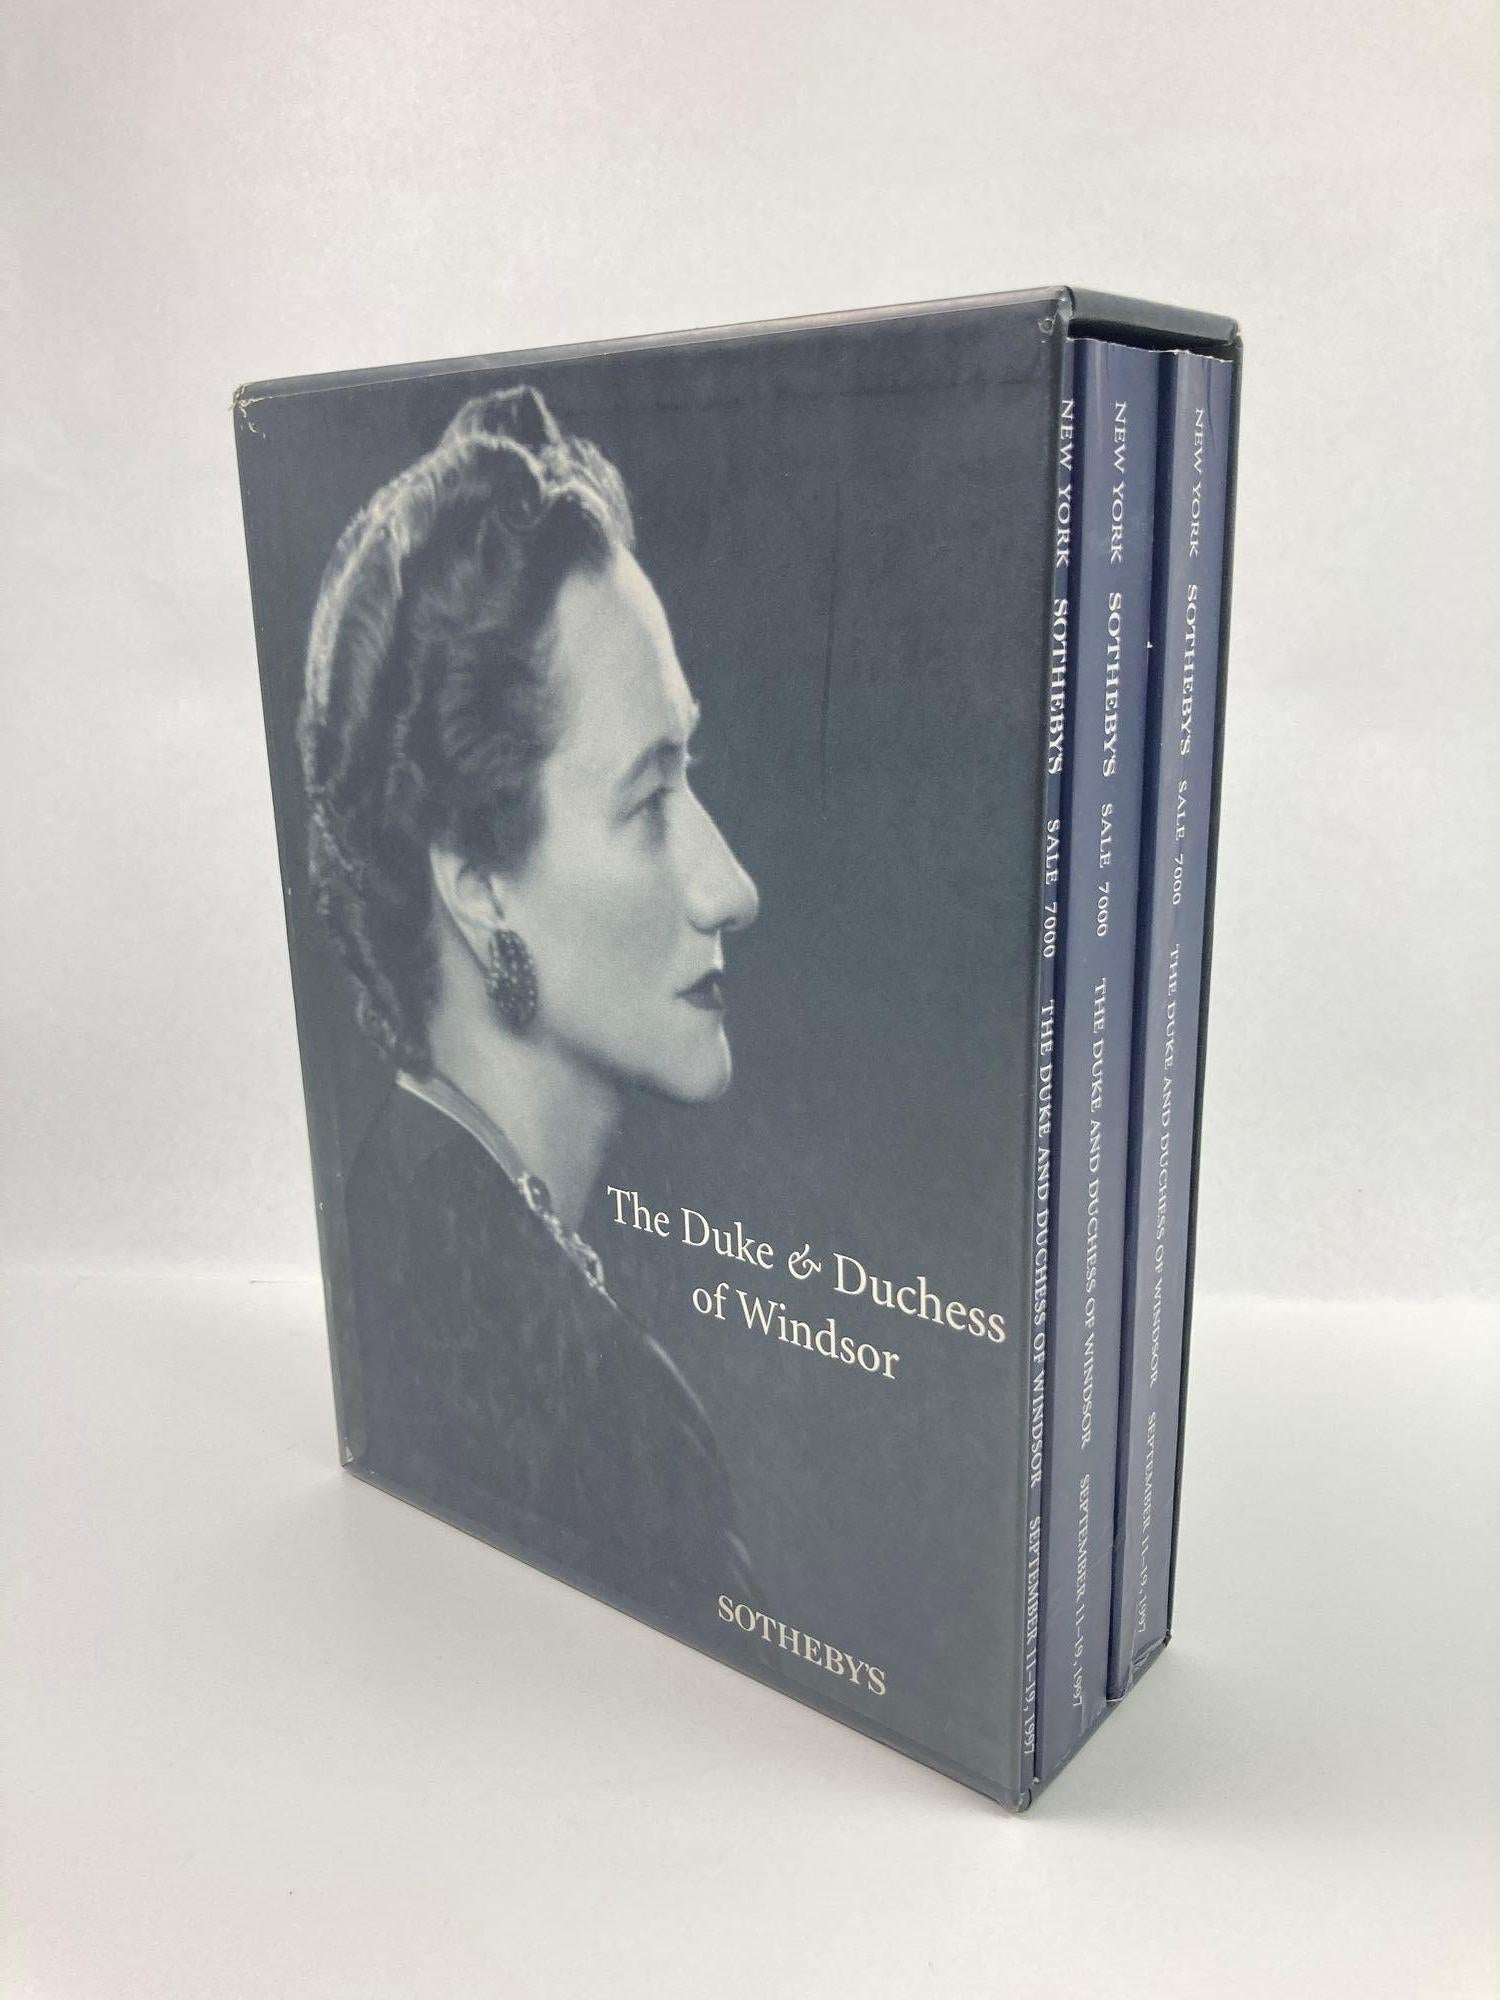 20ième siècle The Duke and Duchess of Windsor Auction Sotheby's Books Catalogs in Slipcase Box (Le duc et la duchesse de Windsor, ventes aux enchères, catalogues de livres de Sotheby's dans une boîte) en vente